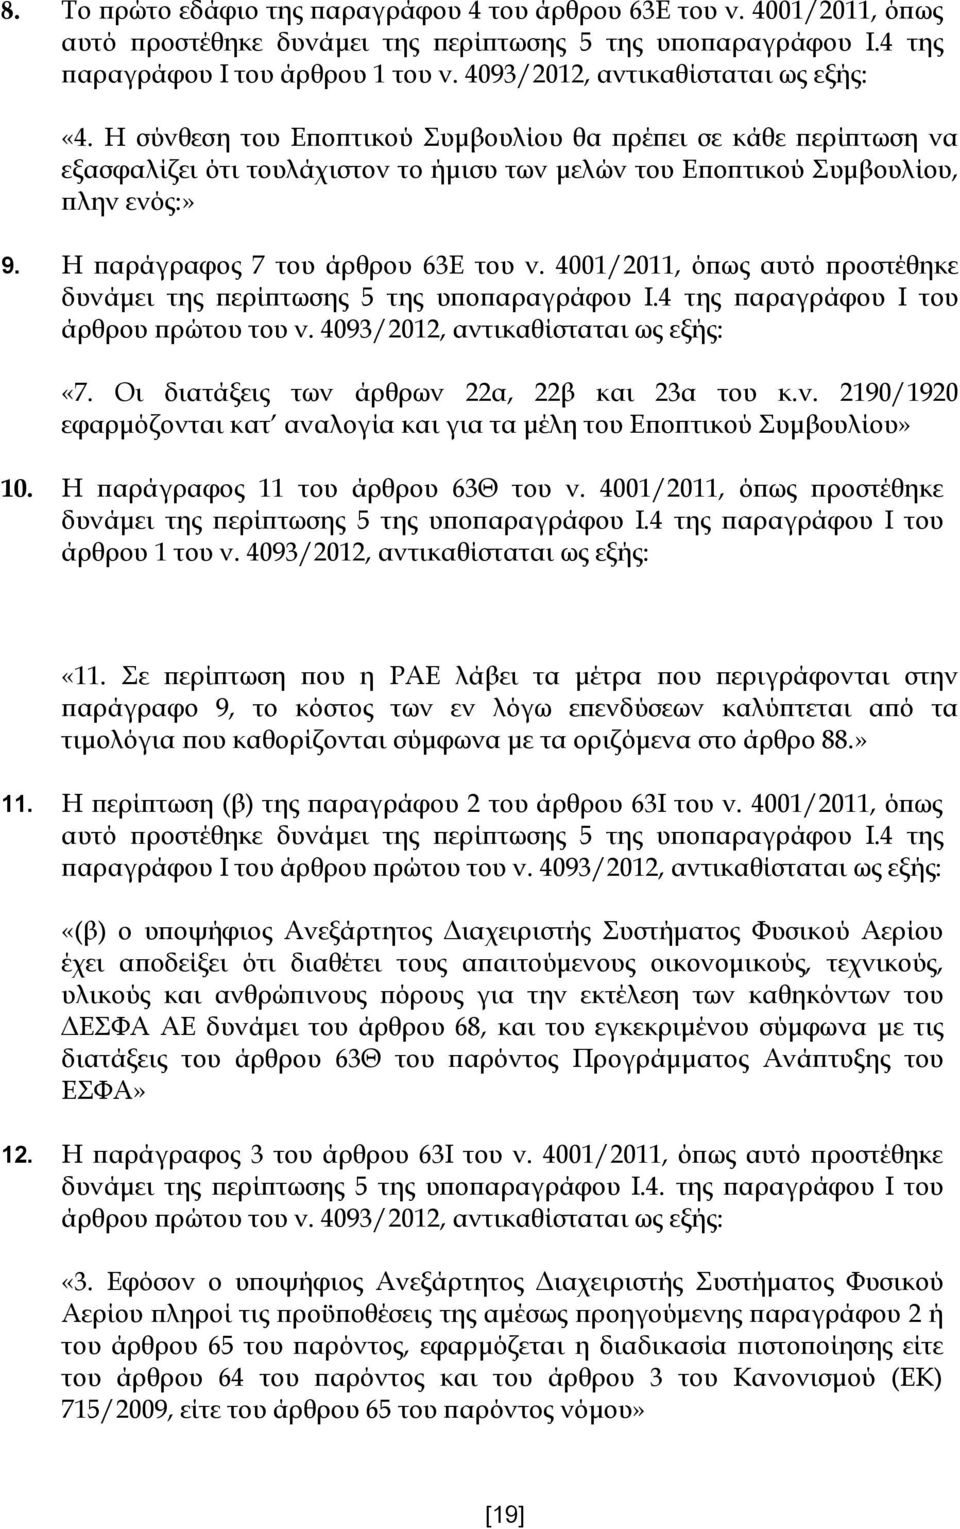 Η παράγραφος 7 του άρθρου 63Ε του ν. 4001/2011, όπως αυτό προστέθηκε δυνάμει της περίπτωσης 5 της υποπαραγράφου Ι.4 της παραγράφου Ι του άρθρου πρώτου του ν. 4093/2012, αντικαθίσταται ως εξής: «7.